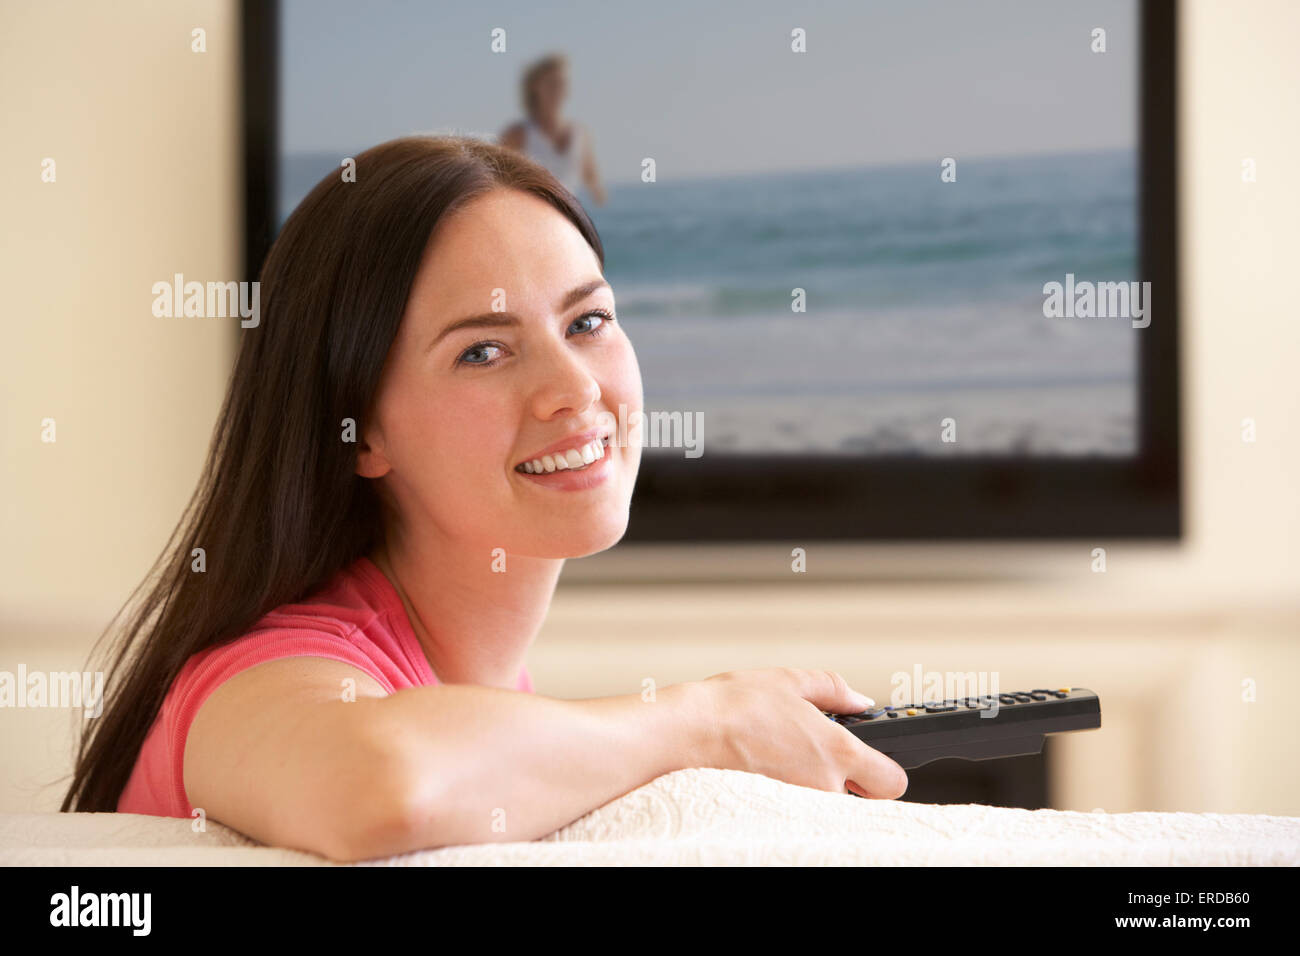 Frau vor dem Breitbild-Fernseher zu Hause Stockfoto